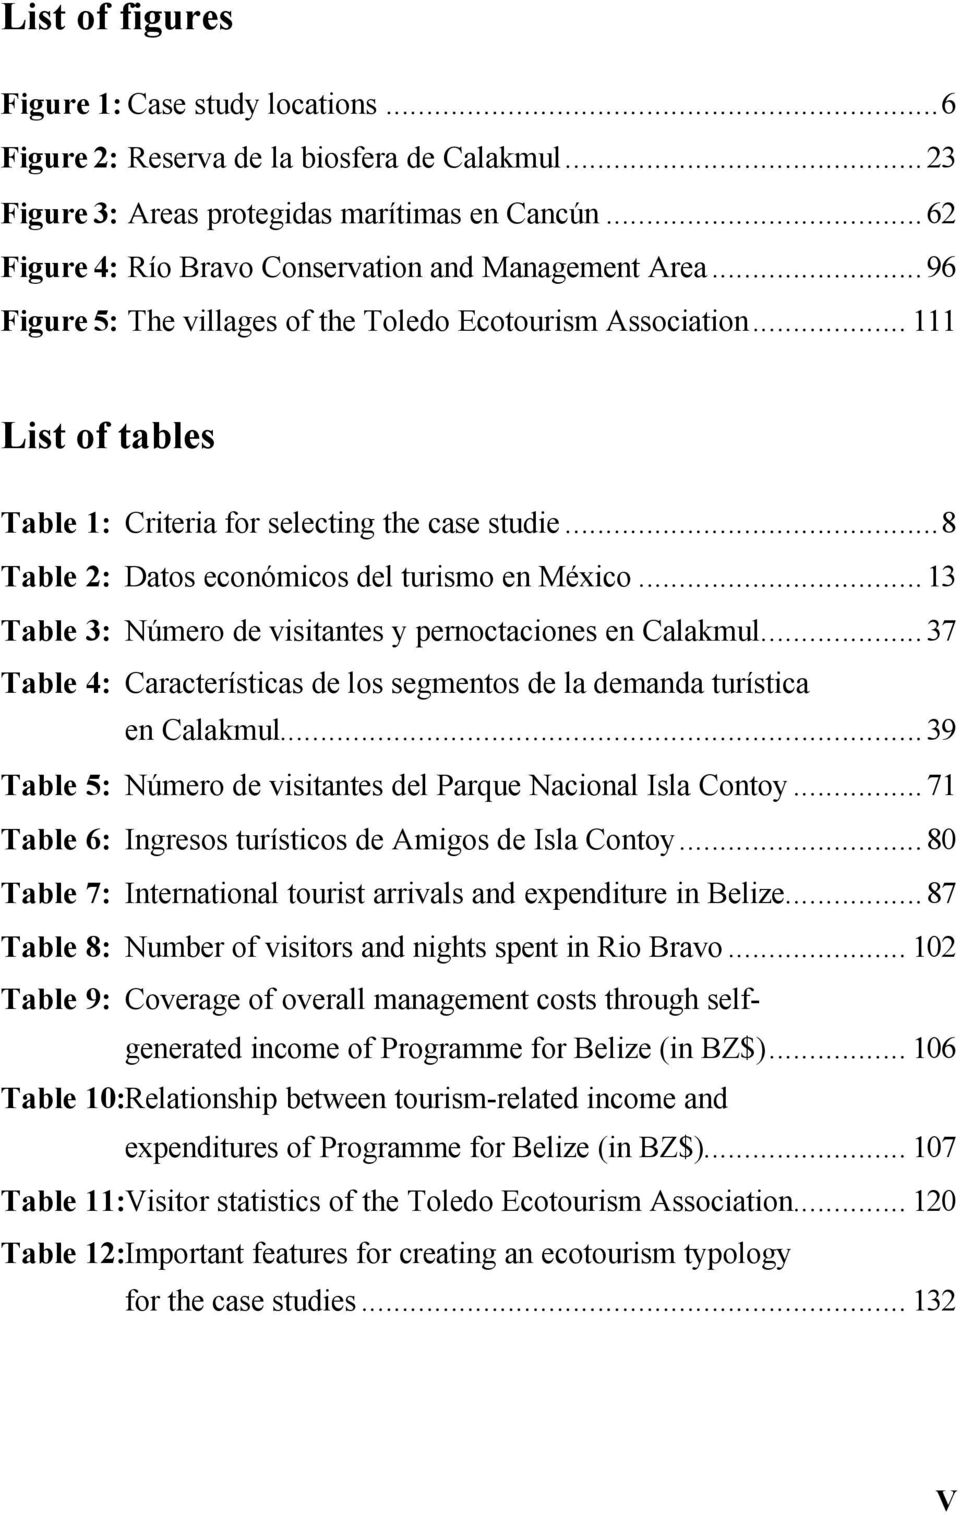 ..8 Table 2: Datos económicos del turismo en México...13 Table 3: Número de visitantes y pernoctaciones en Calakmul...37 Table 4: Características de los segmentos de la demanda turística en Calakmul.